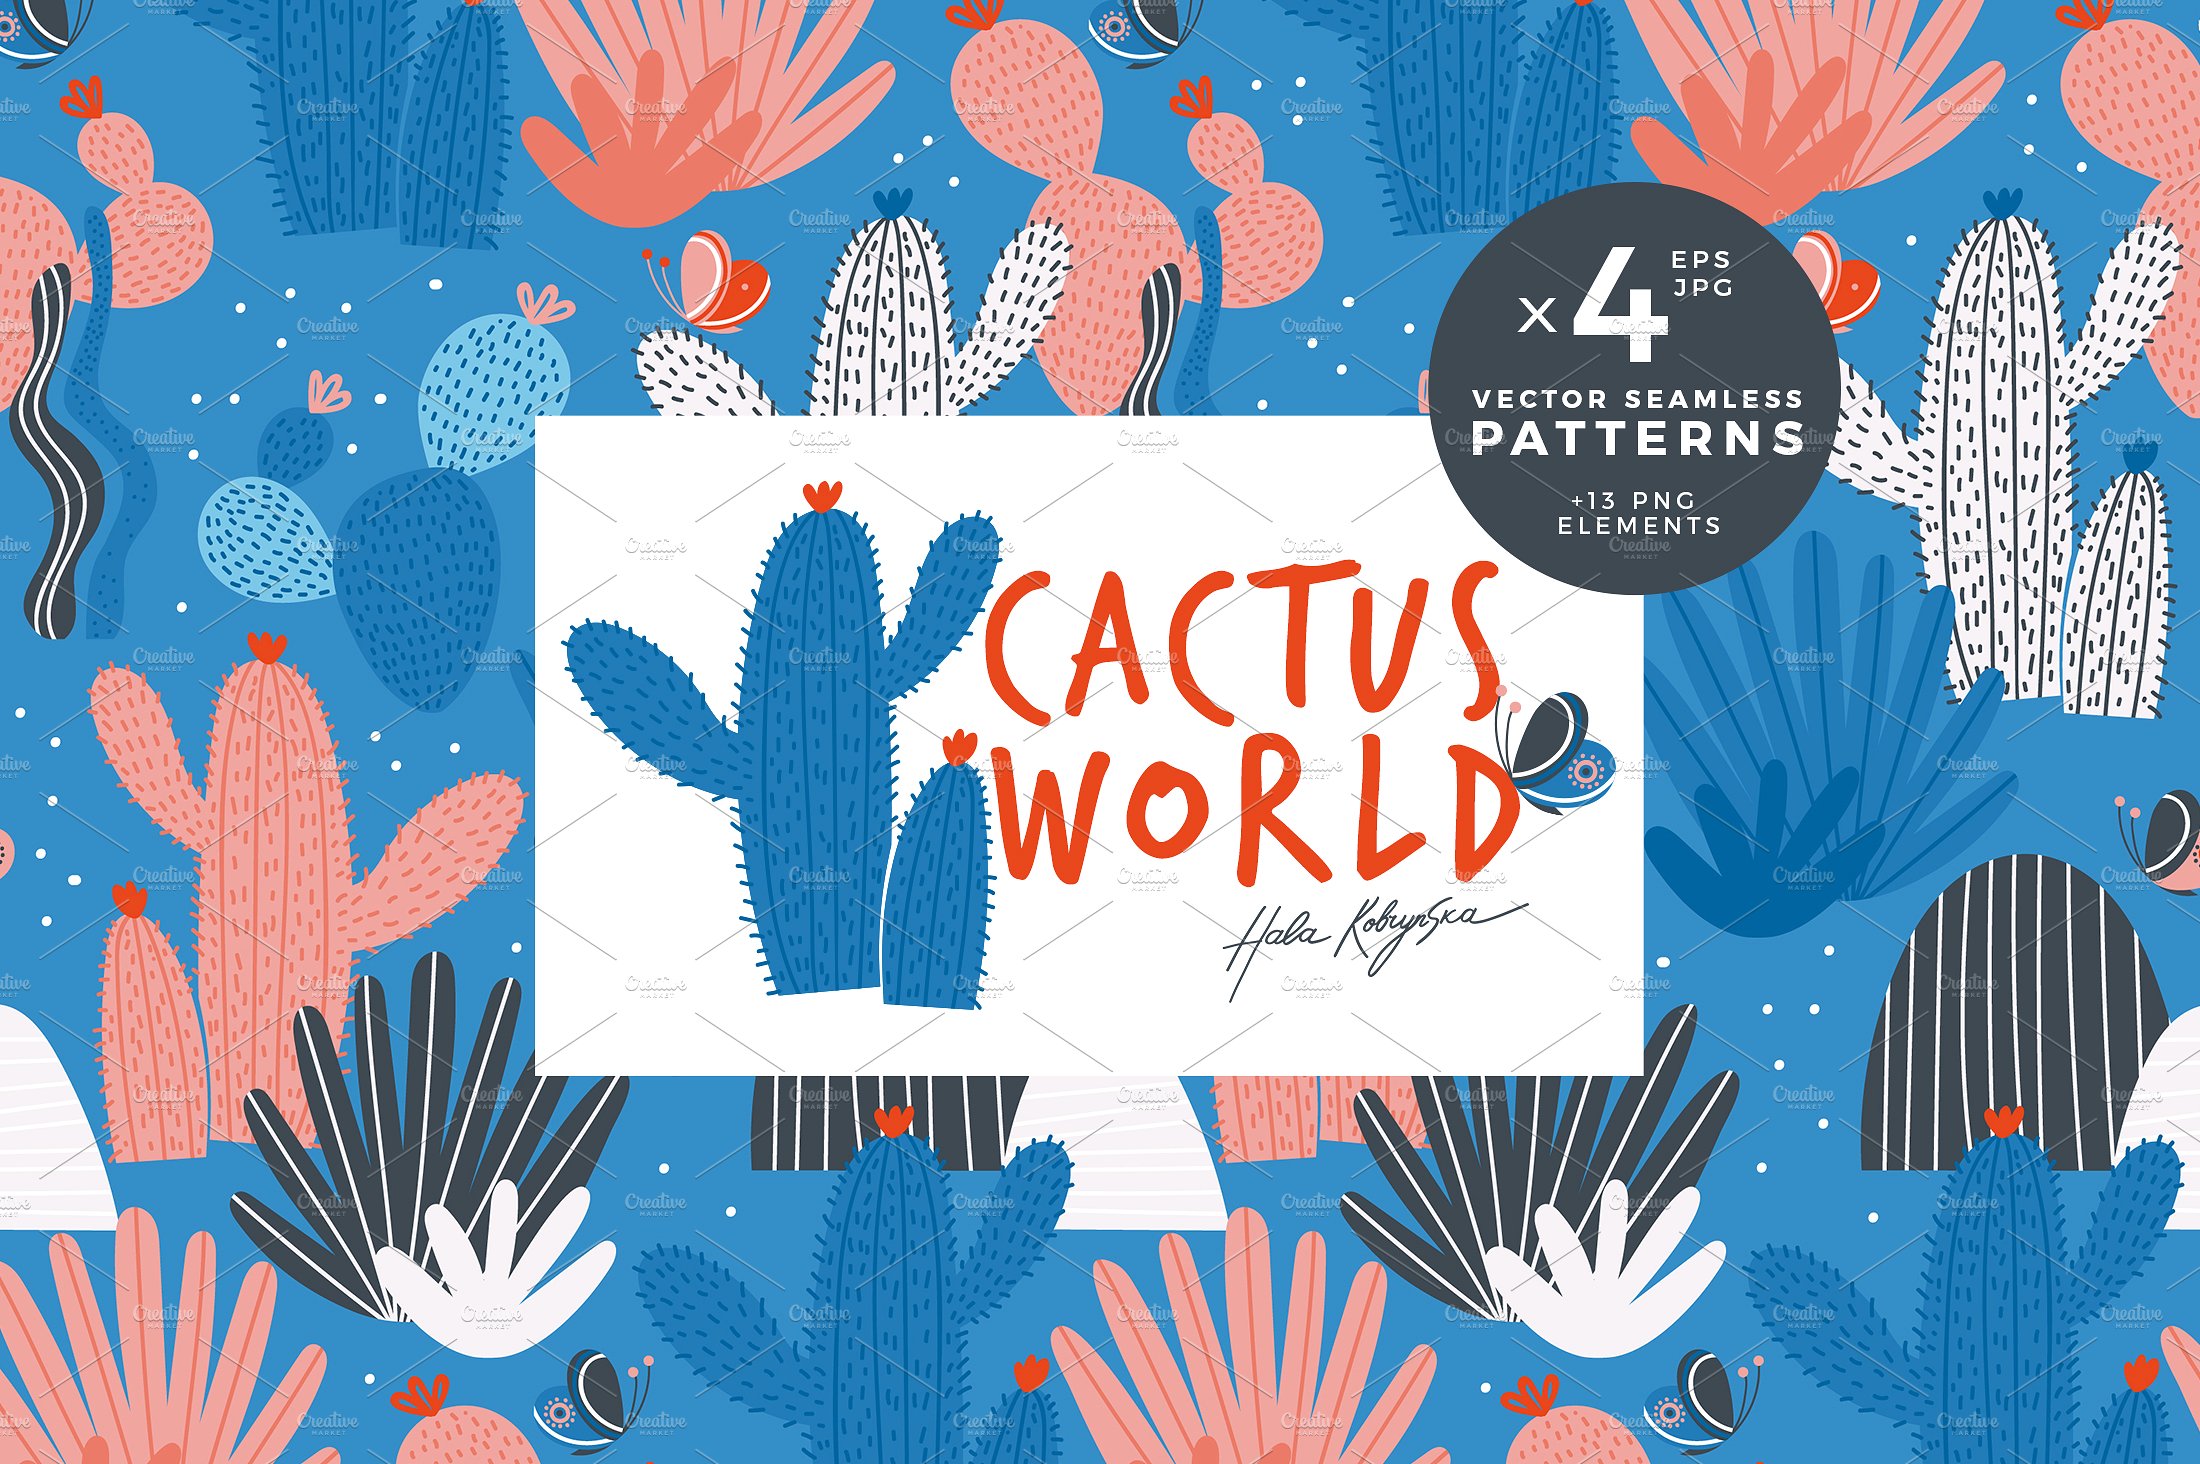 仙人掌手绘矢量图案 Cactus World Weamless Pattern插图